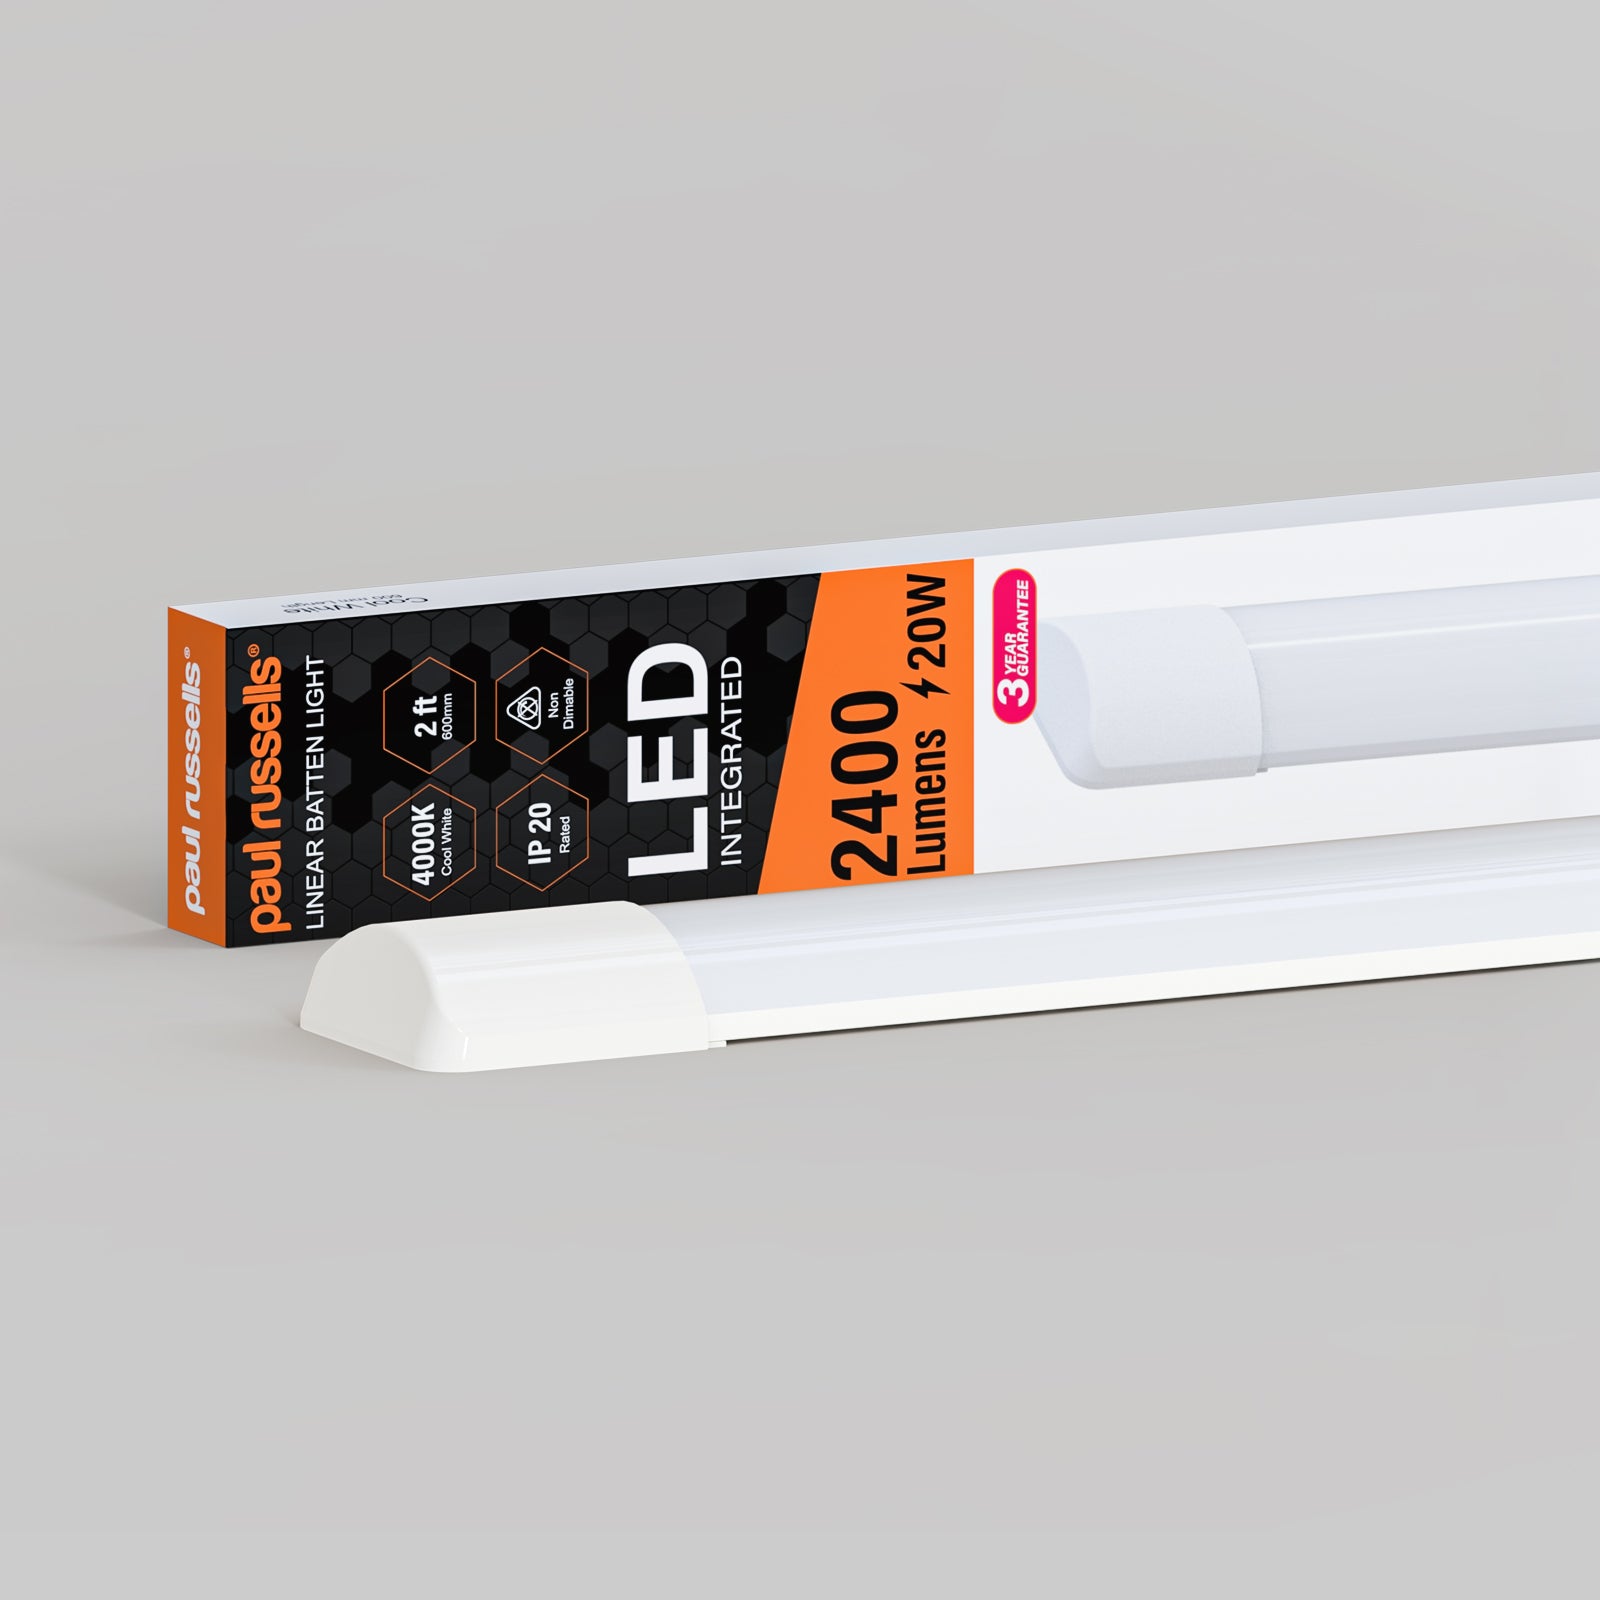 20W LED Batten Light, 2ft Ceiling Fitting Tube Light, 2400 Lumen, 4000K Cool White, Fluorescent Lighting Replacement